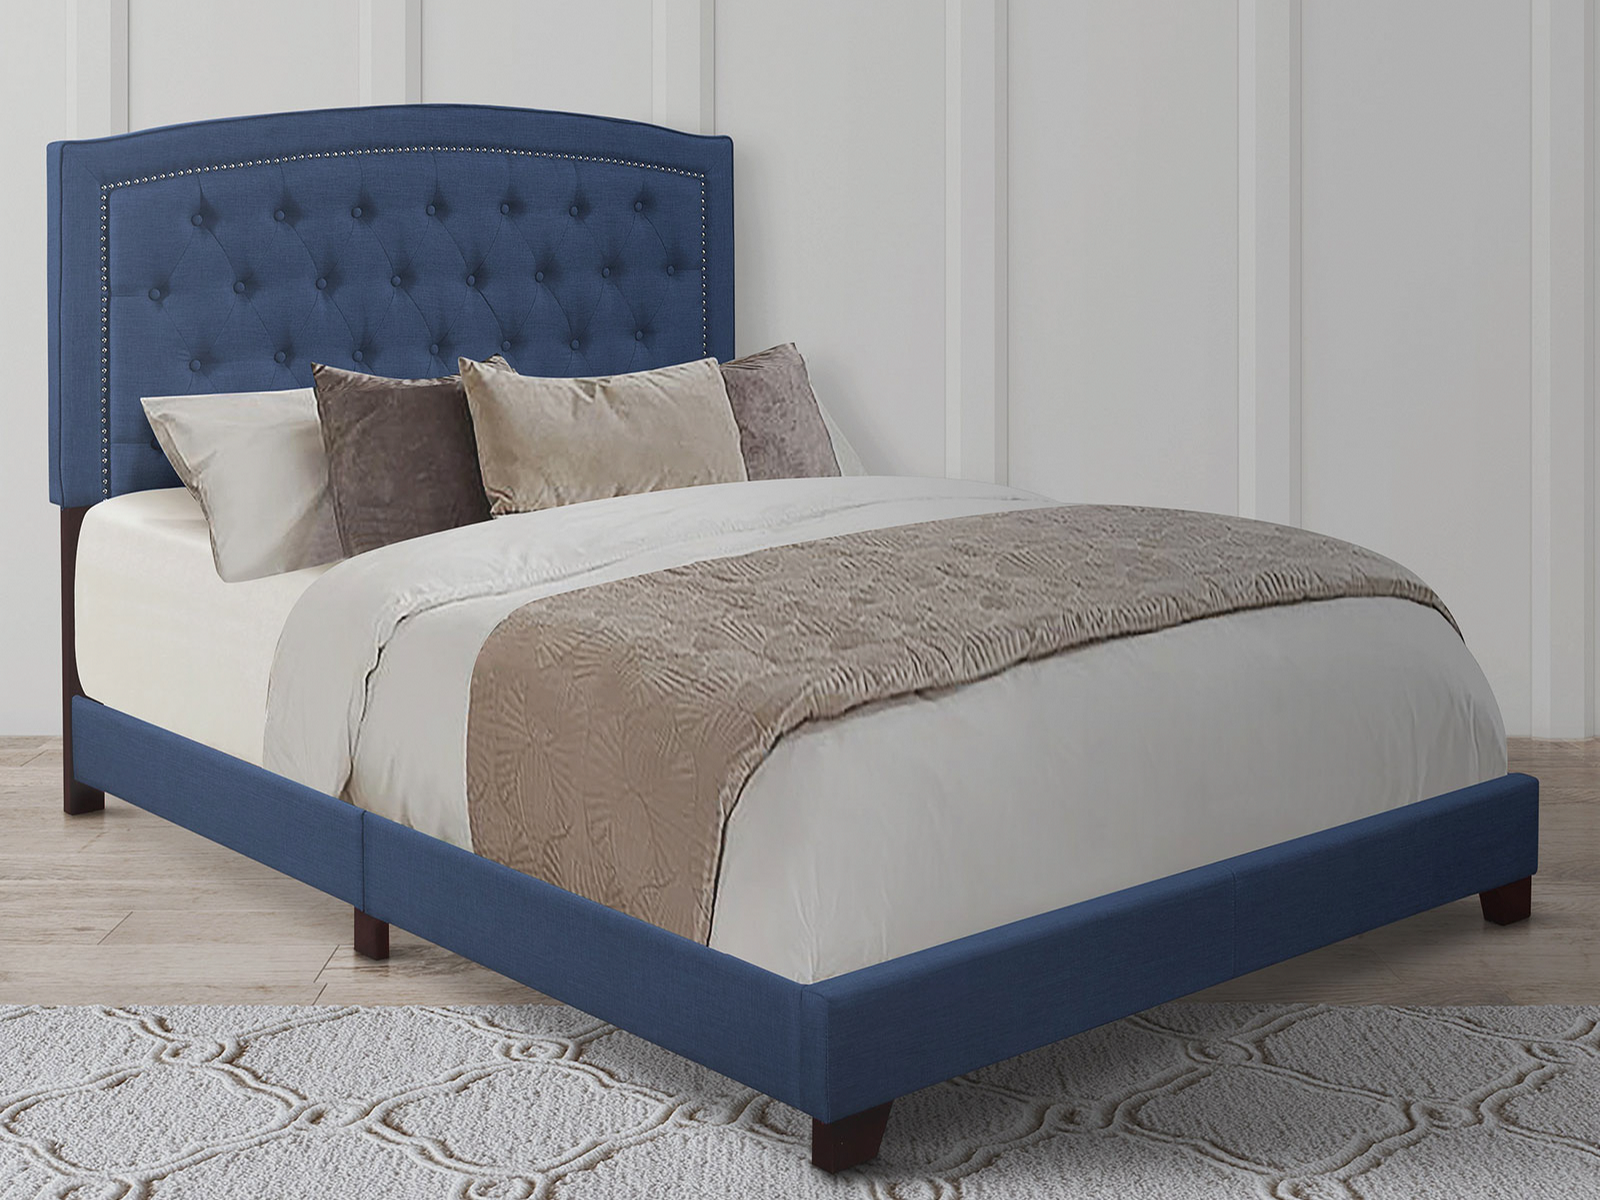 Homelegance Upholstered Bed Set | Queen | Linden Bed Frame & Headboard | Blue